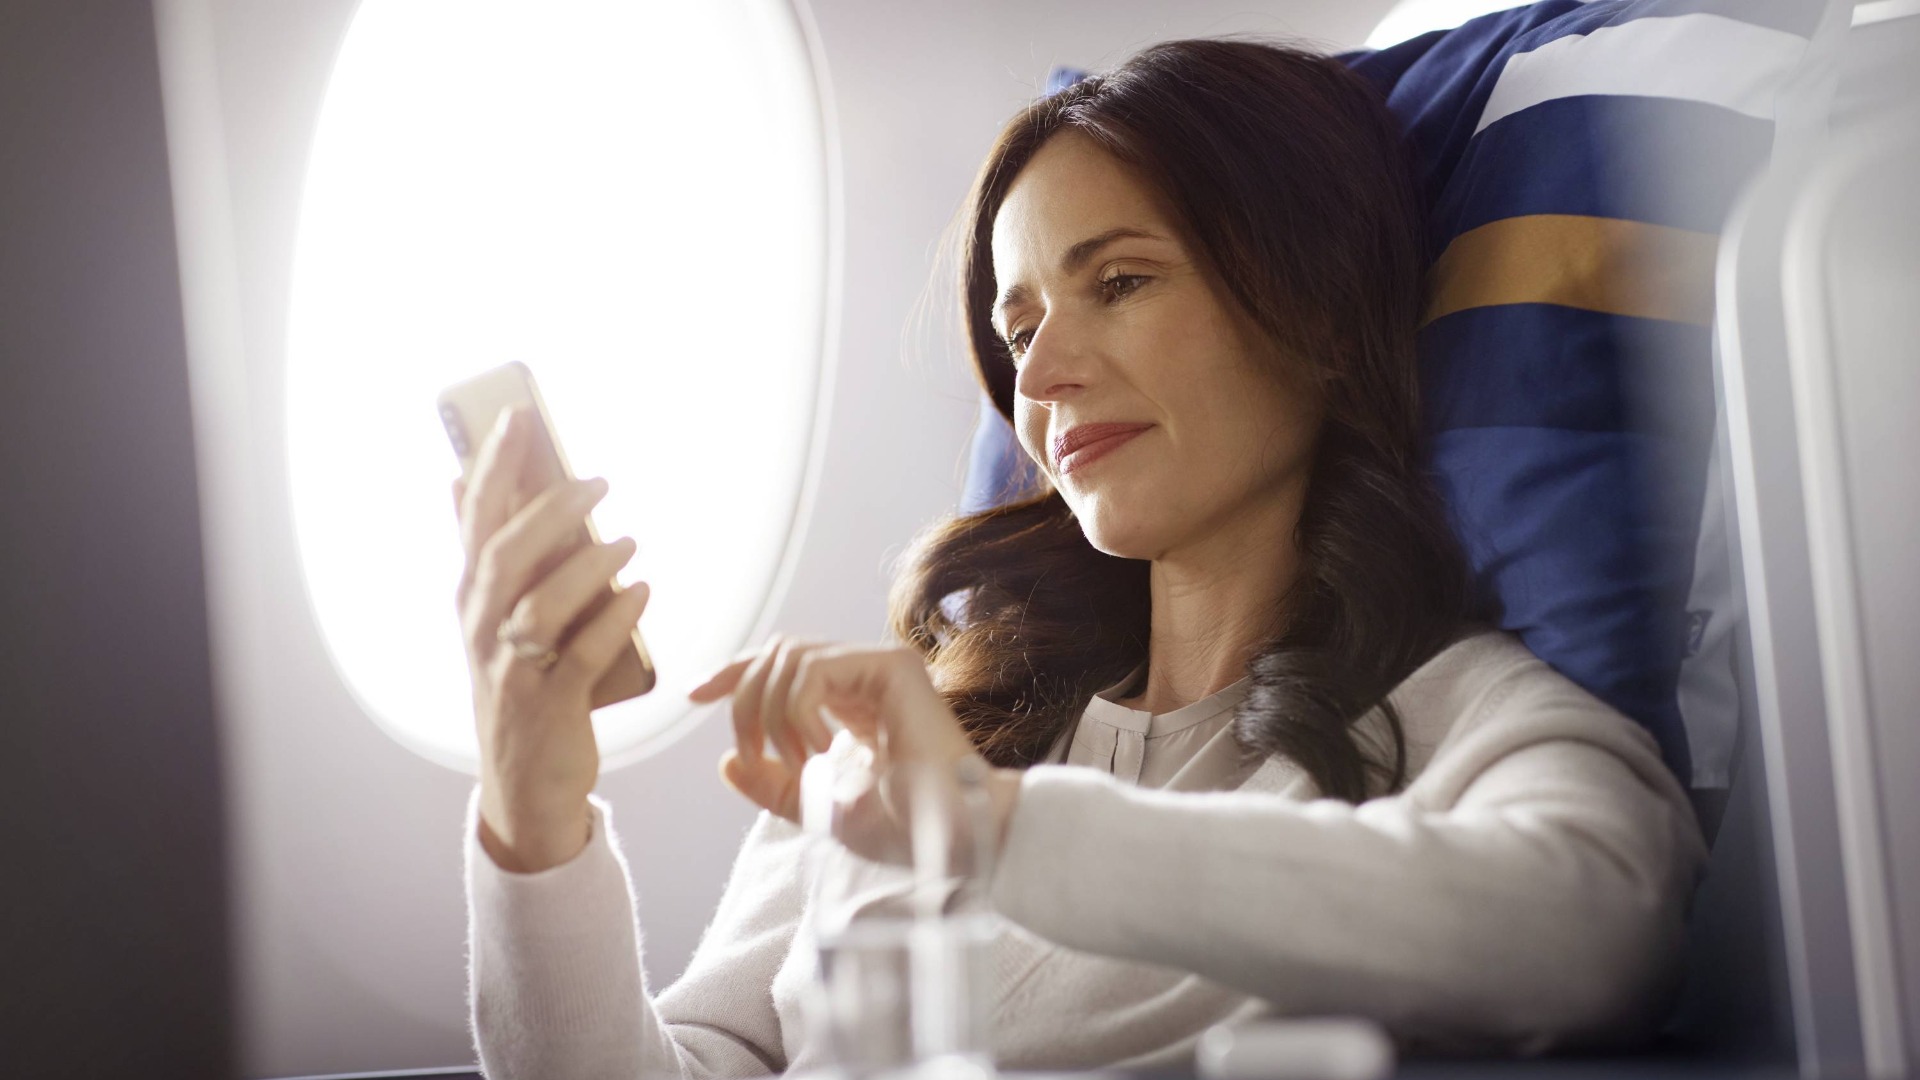 Lufthansa Amplia Opções de Entretenimento a Bordo com Podcasts